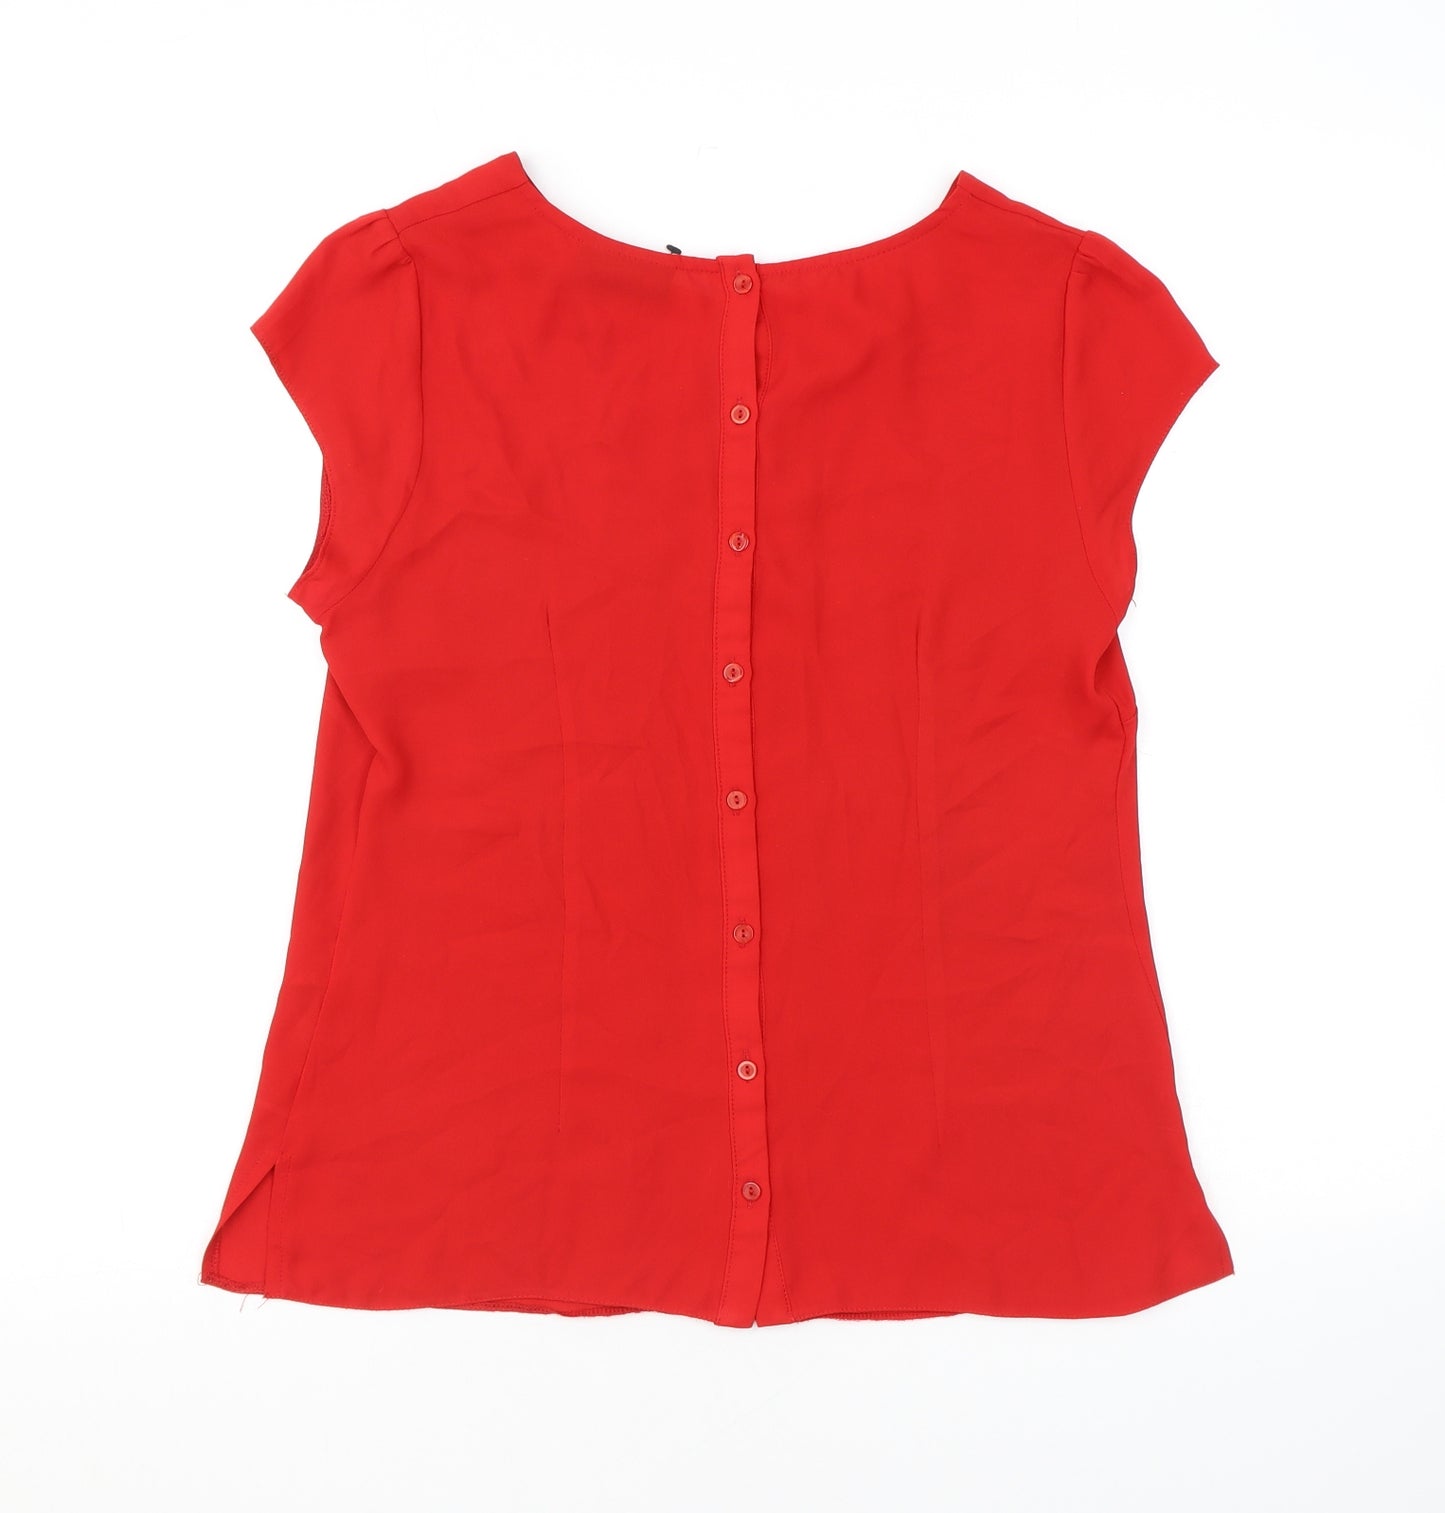 Wallis Womens Red Polyester Basic Blouse Size 10 Round Neck - Keyhole Neck